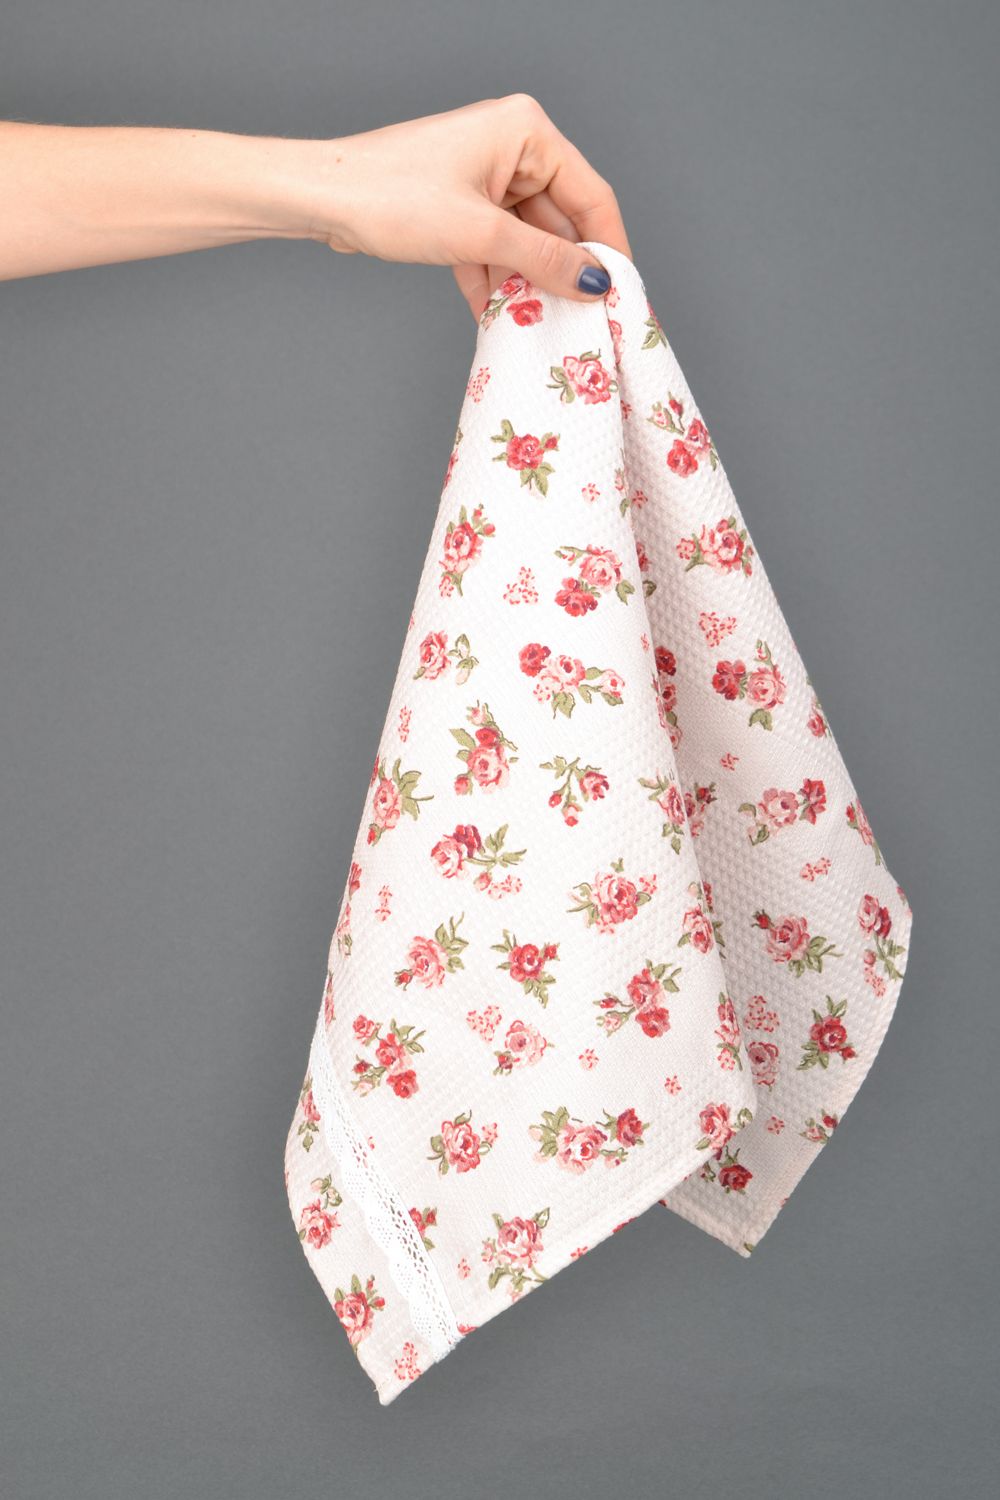 Кухонное полотенце из ткани ручной работы с розочками фото 1